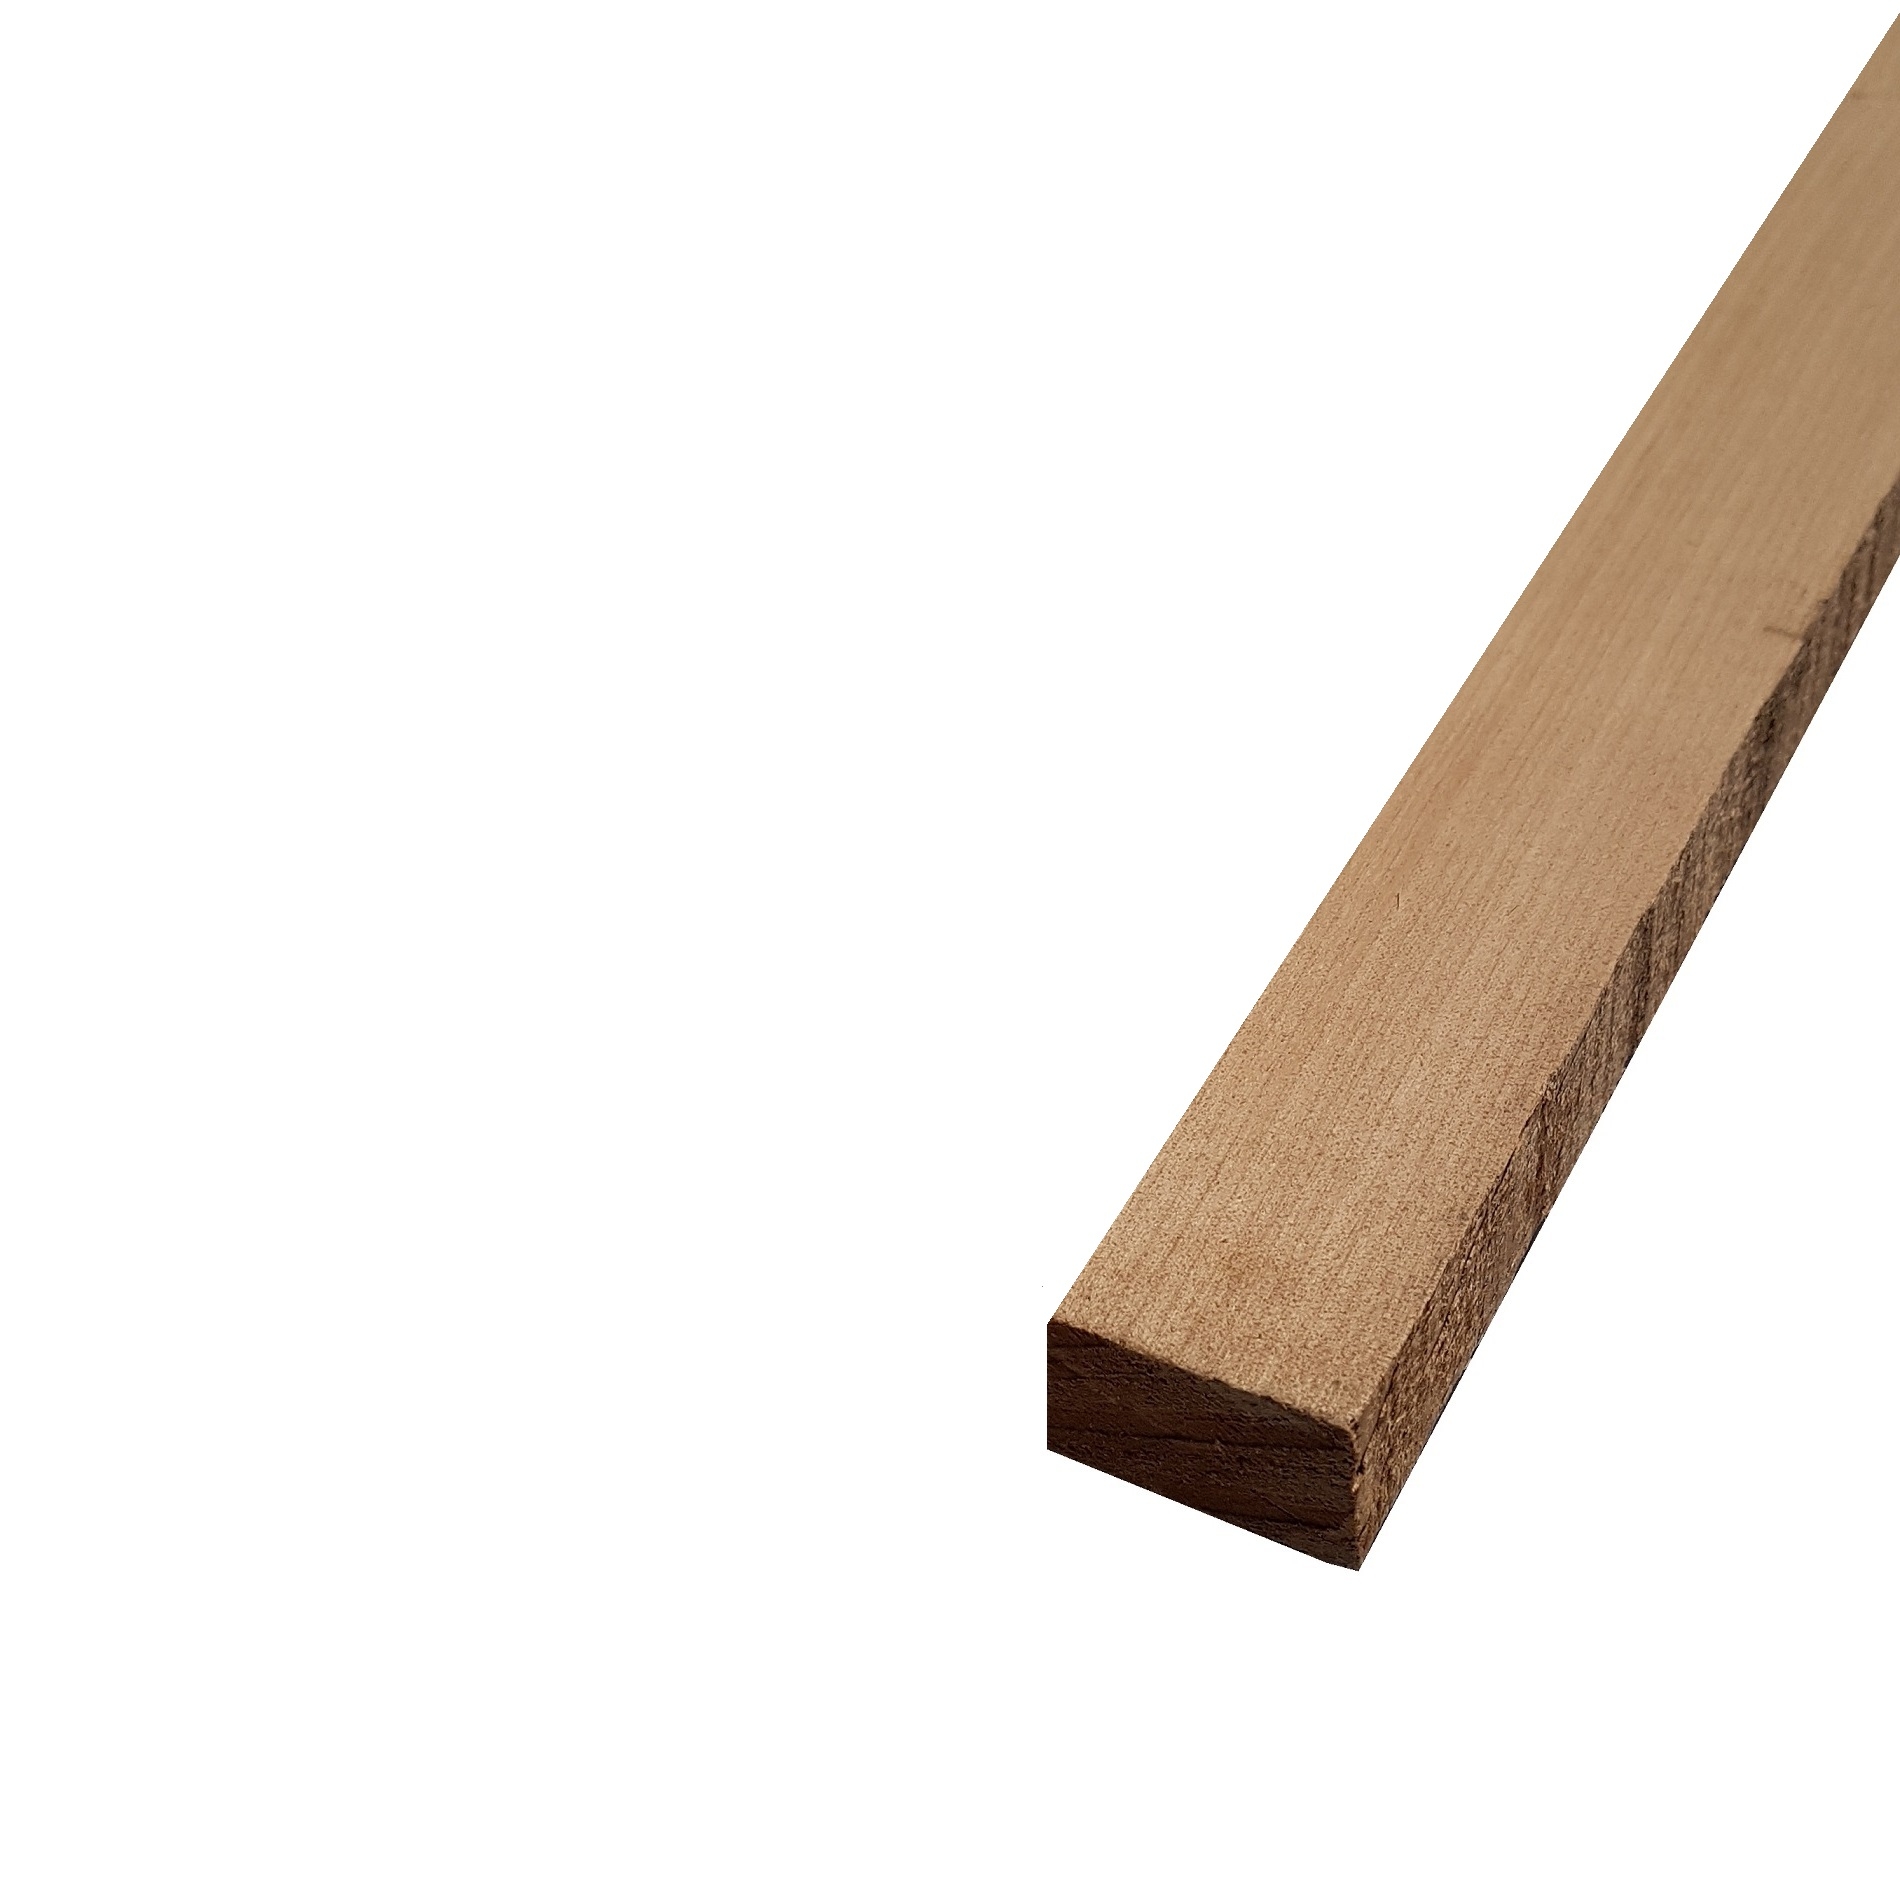 Listello legno di Acero Pacific Coast Maple Calibrato grezzo mm 24 x Varie Misure x 1000